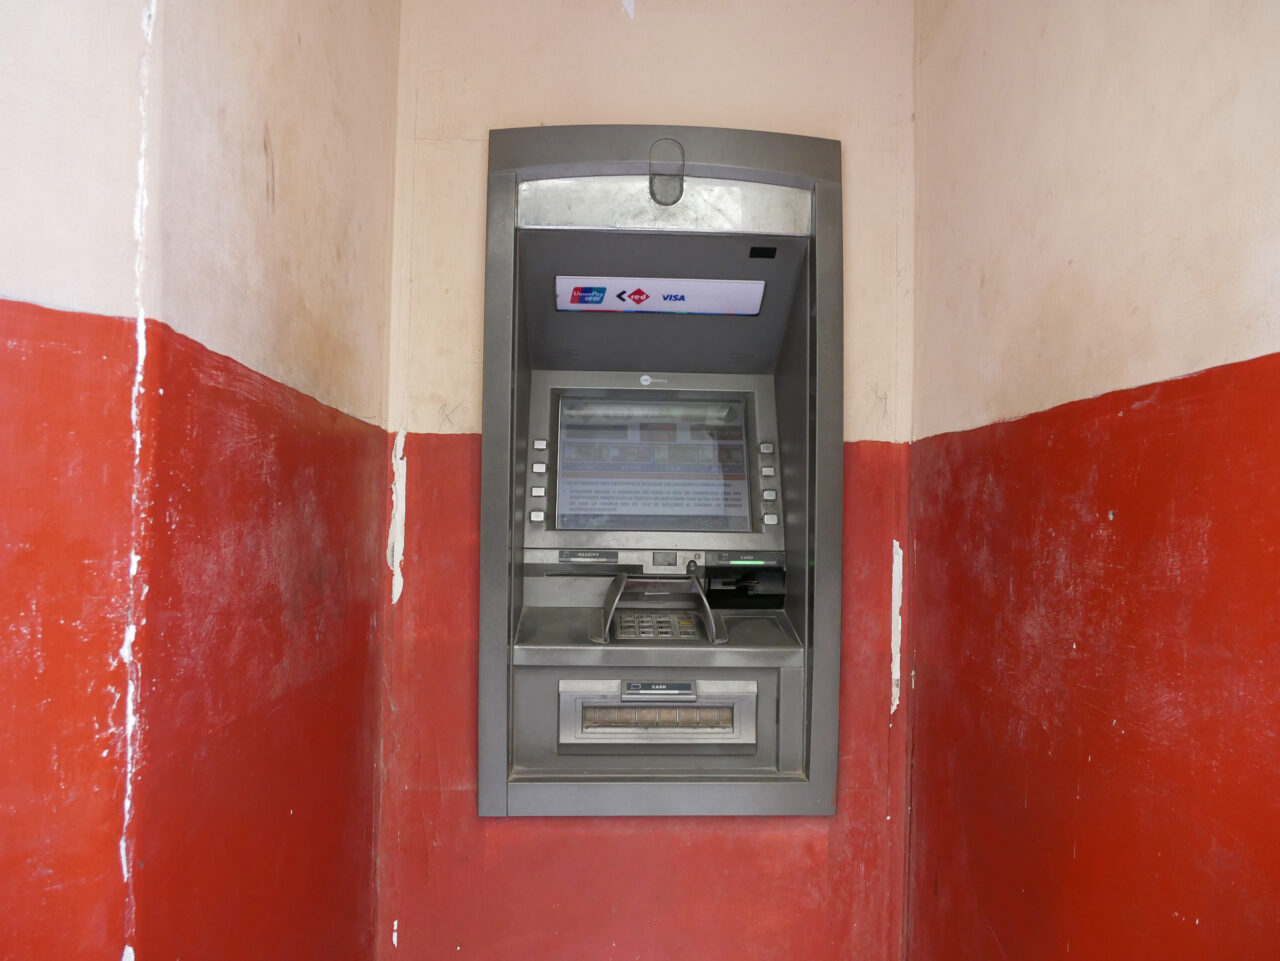 ATM in Cuba